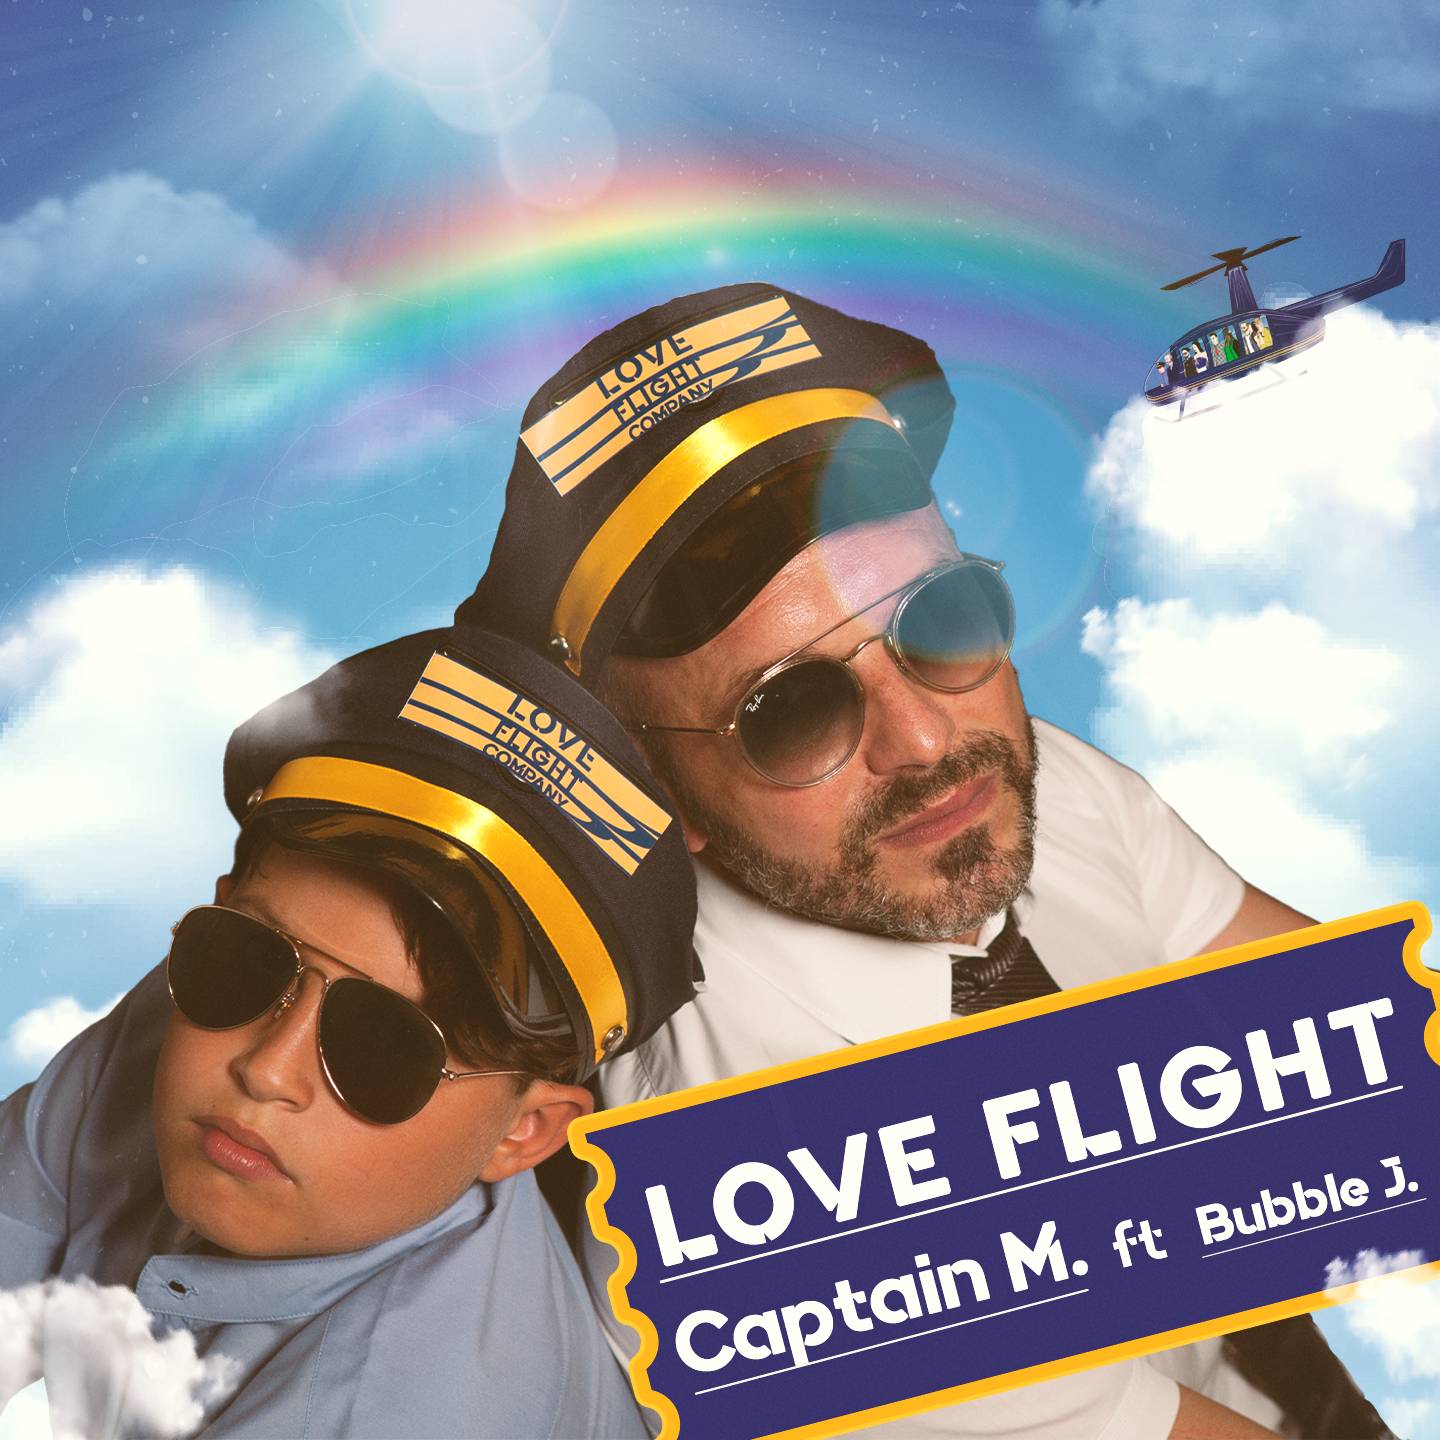 Love flight è il nuovo brano di Captain M e Bubble J